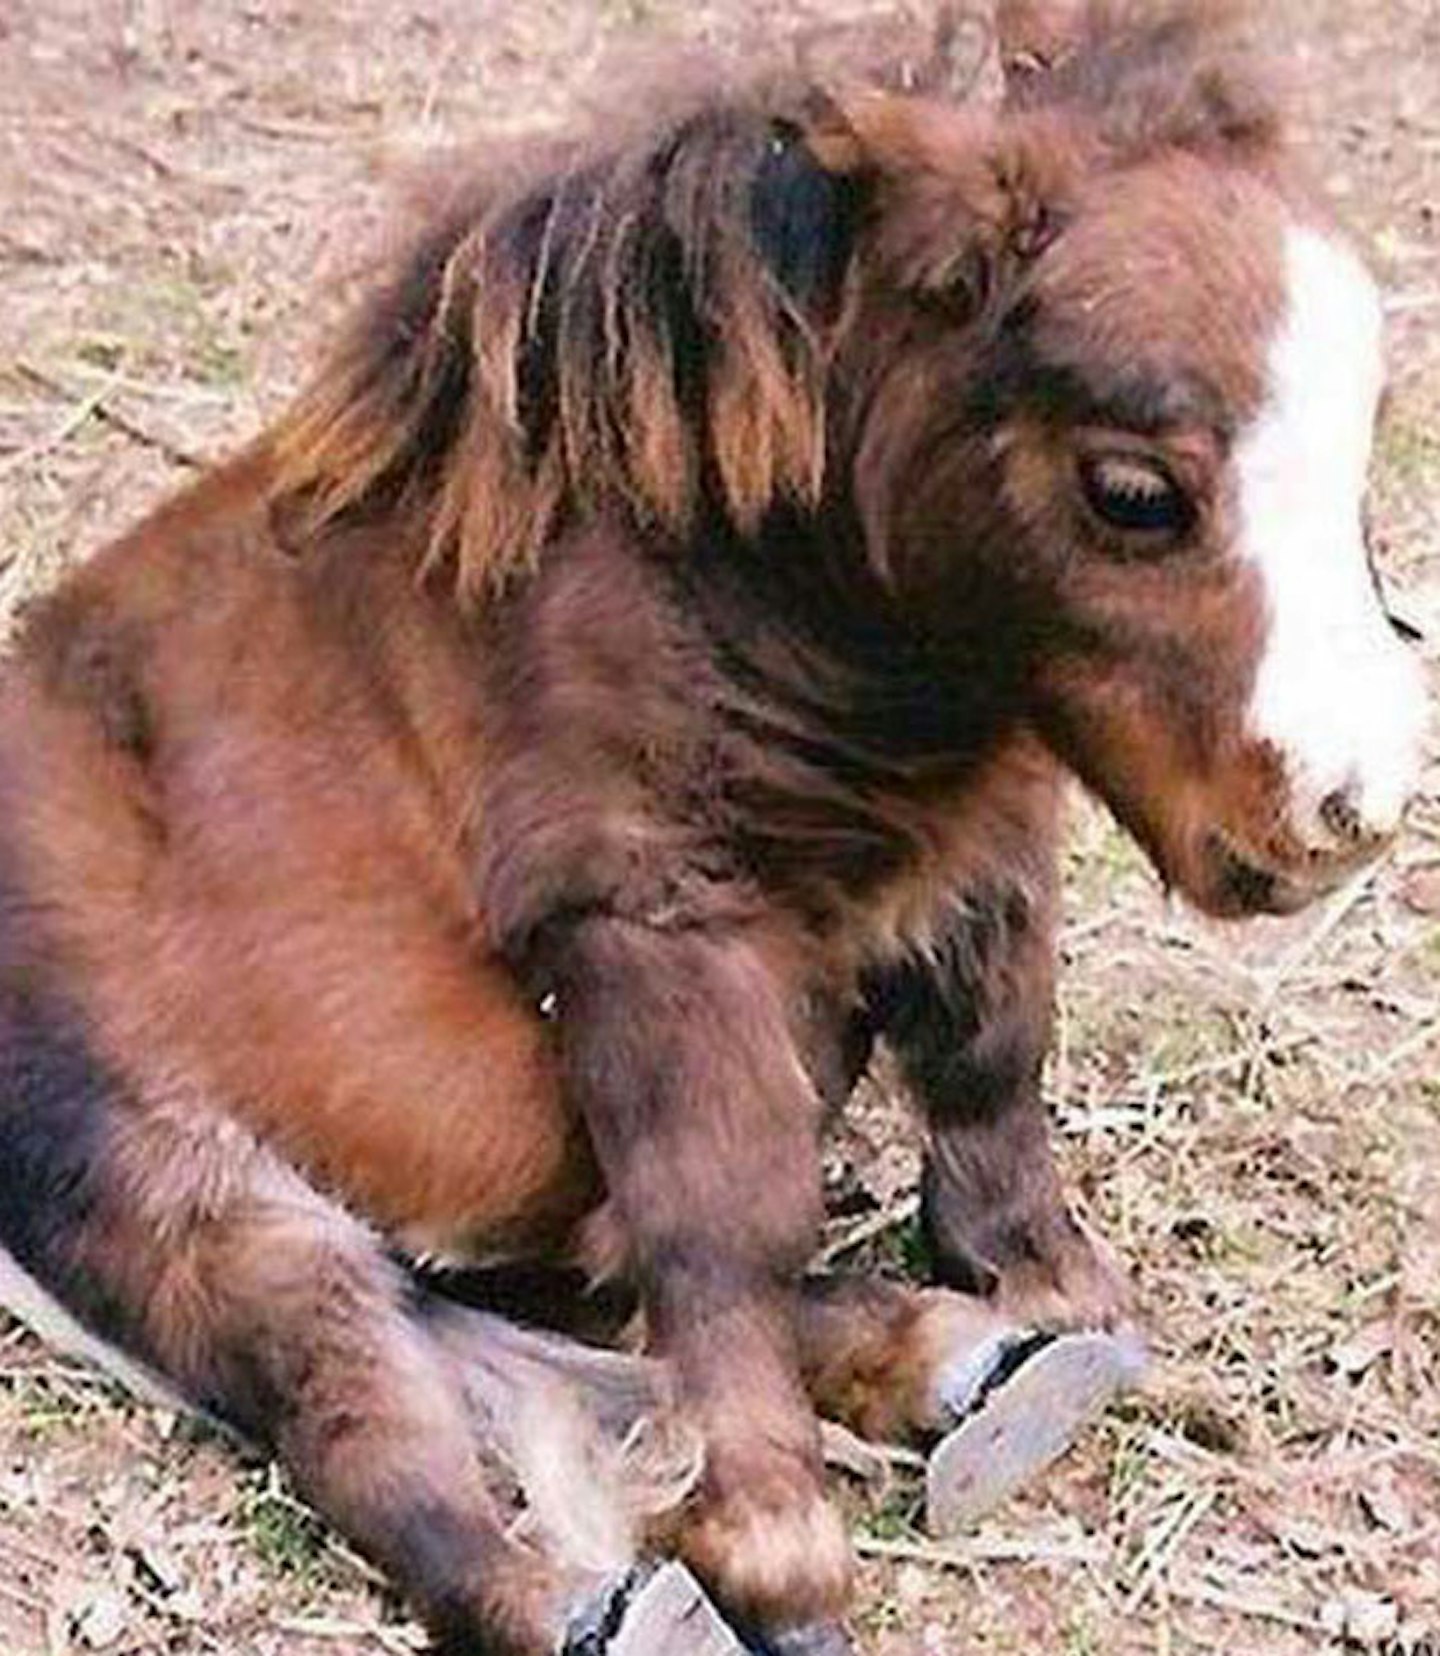 Baby horsey